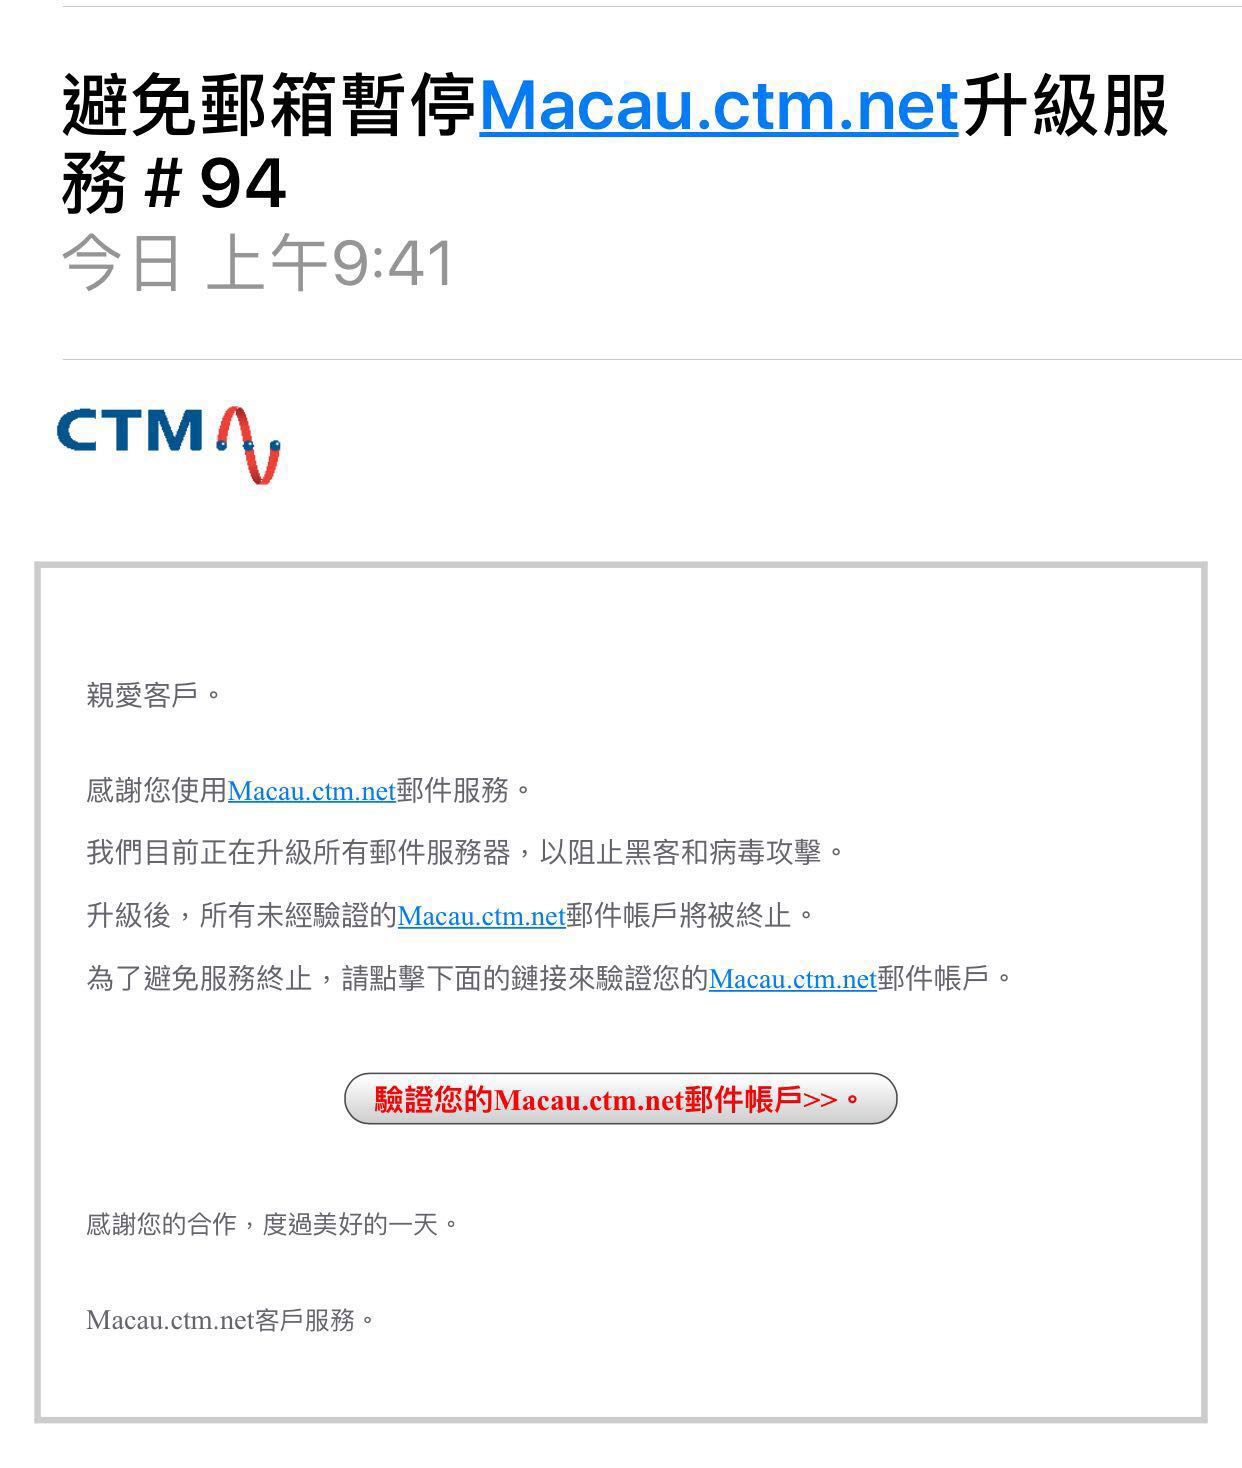 網上岀現疑似假冒CTM詐騙郵件